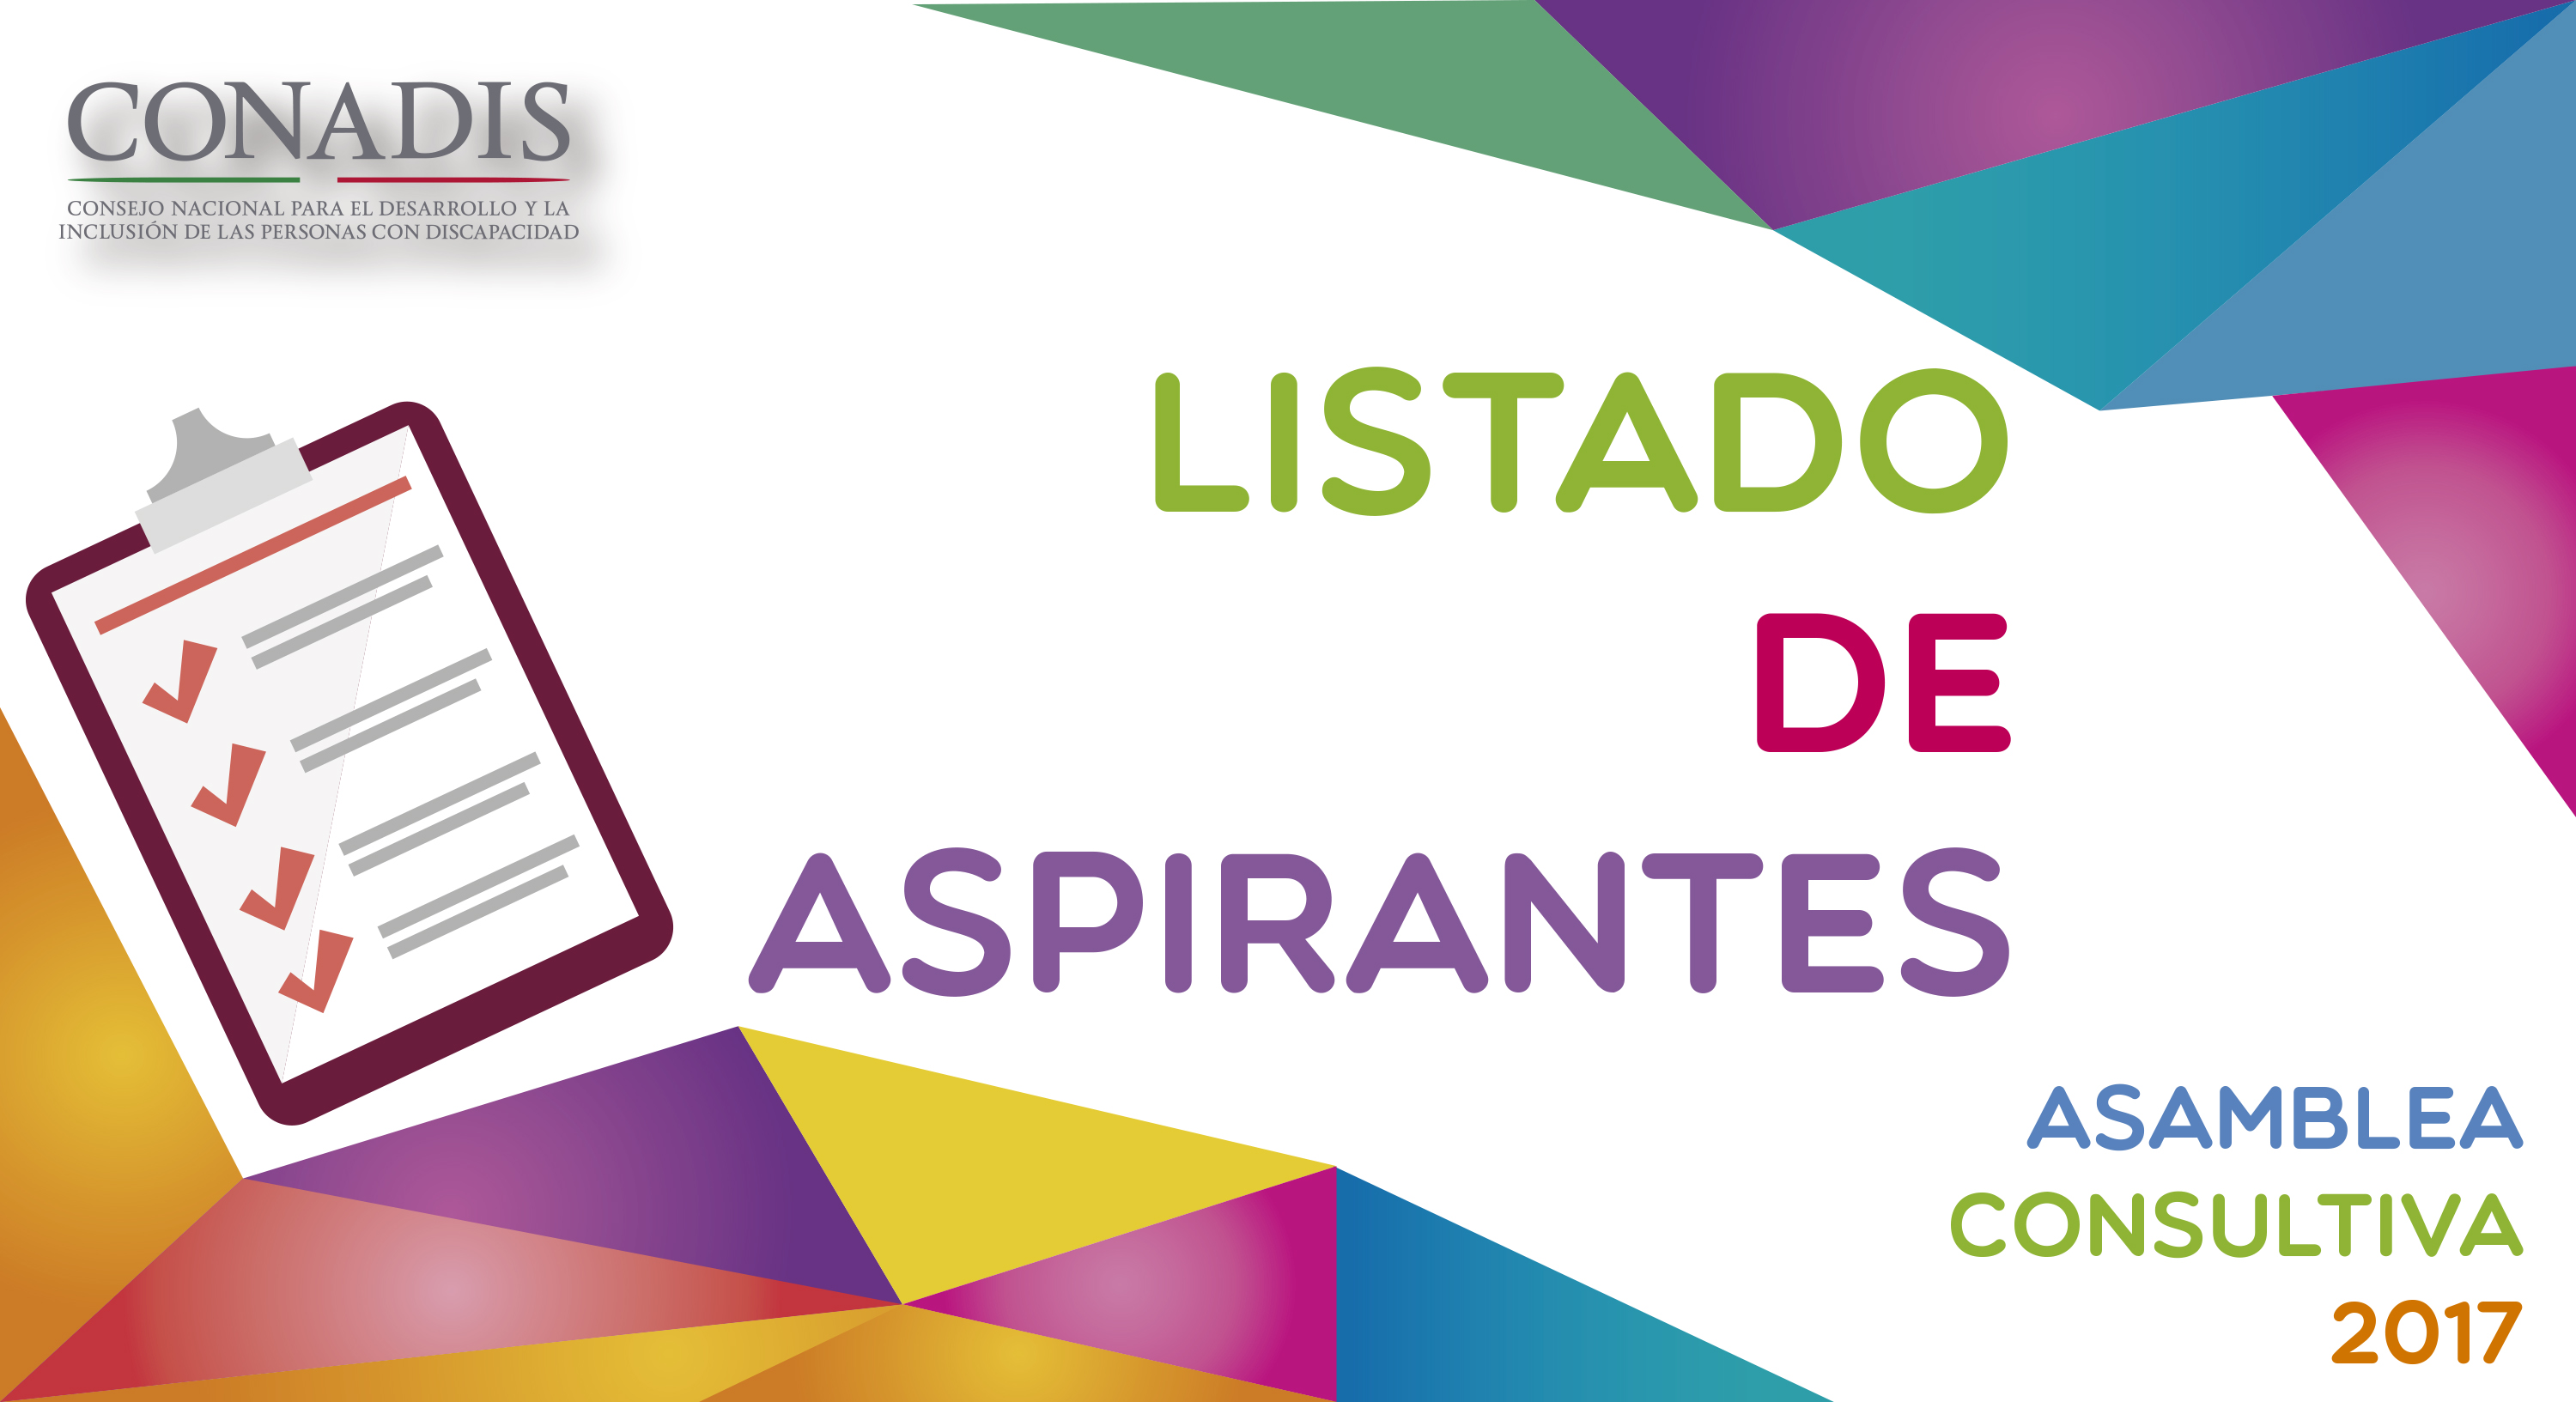 Imagen con la leyenda "Listado de aspirantes, Asamblea Consultiva 2017" y el logotipo del CONADIS